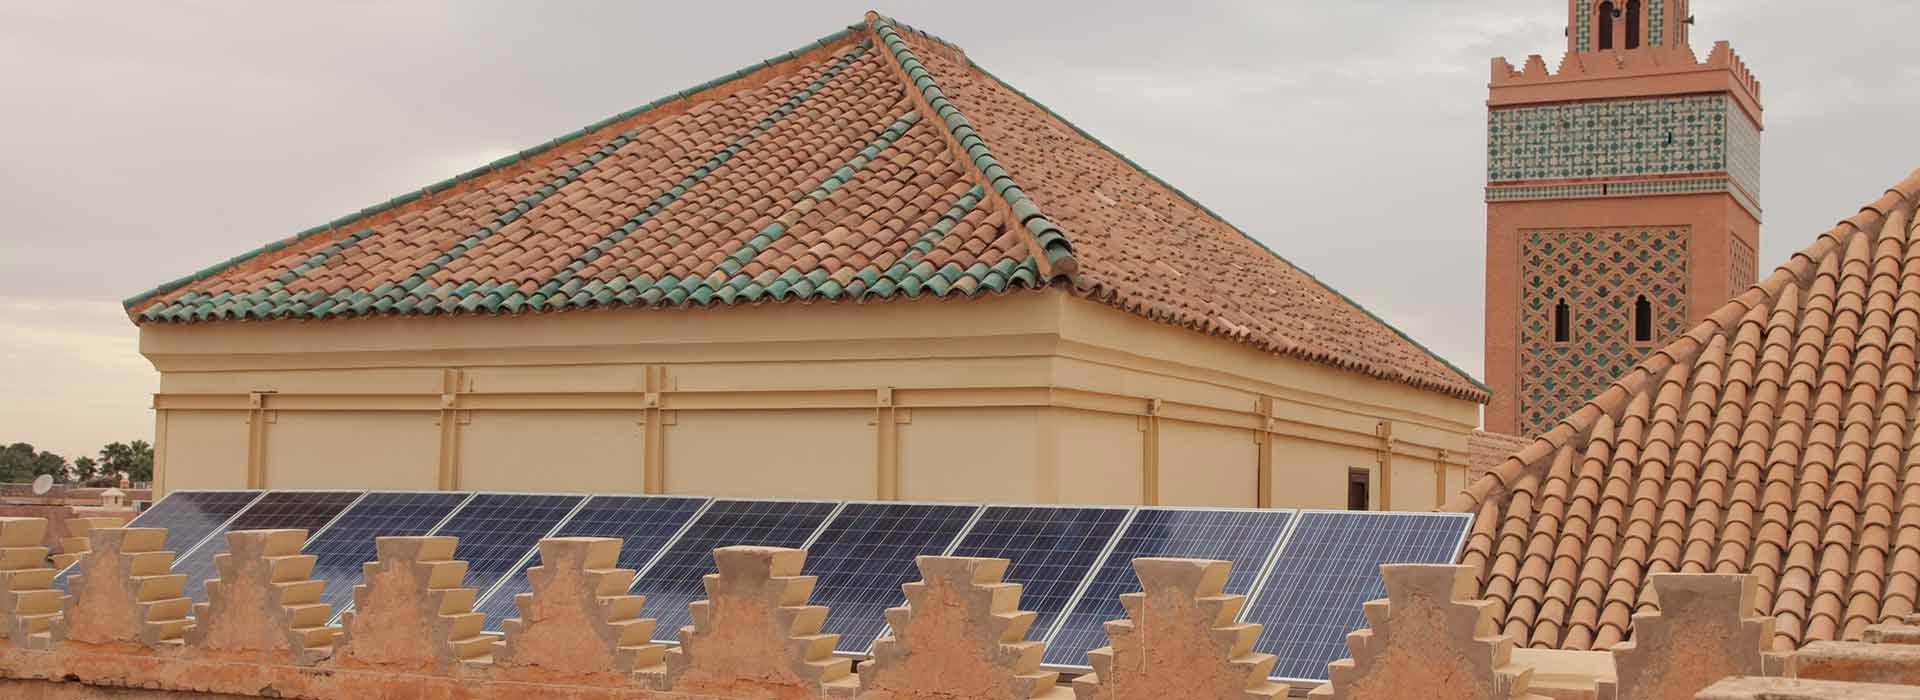 Dach einer Moschee mit Solarpaneelen